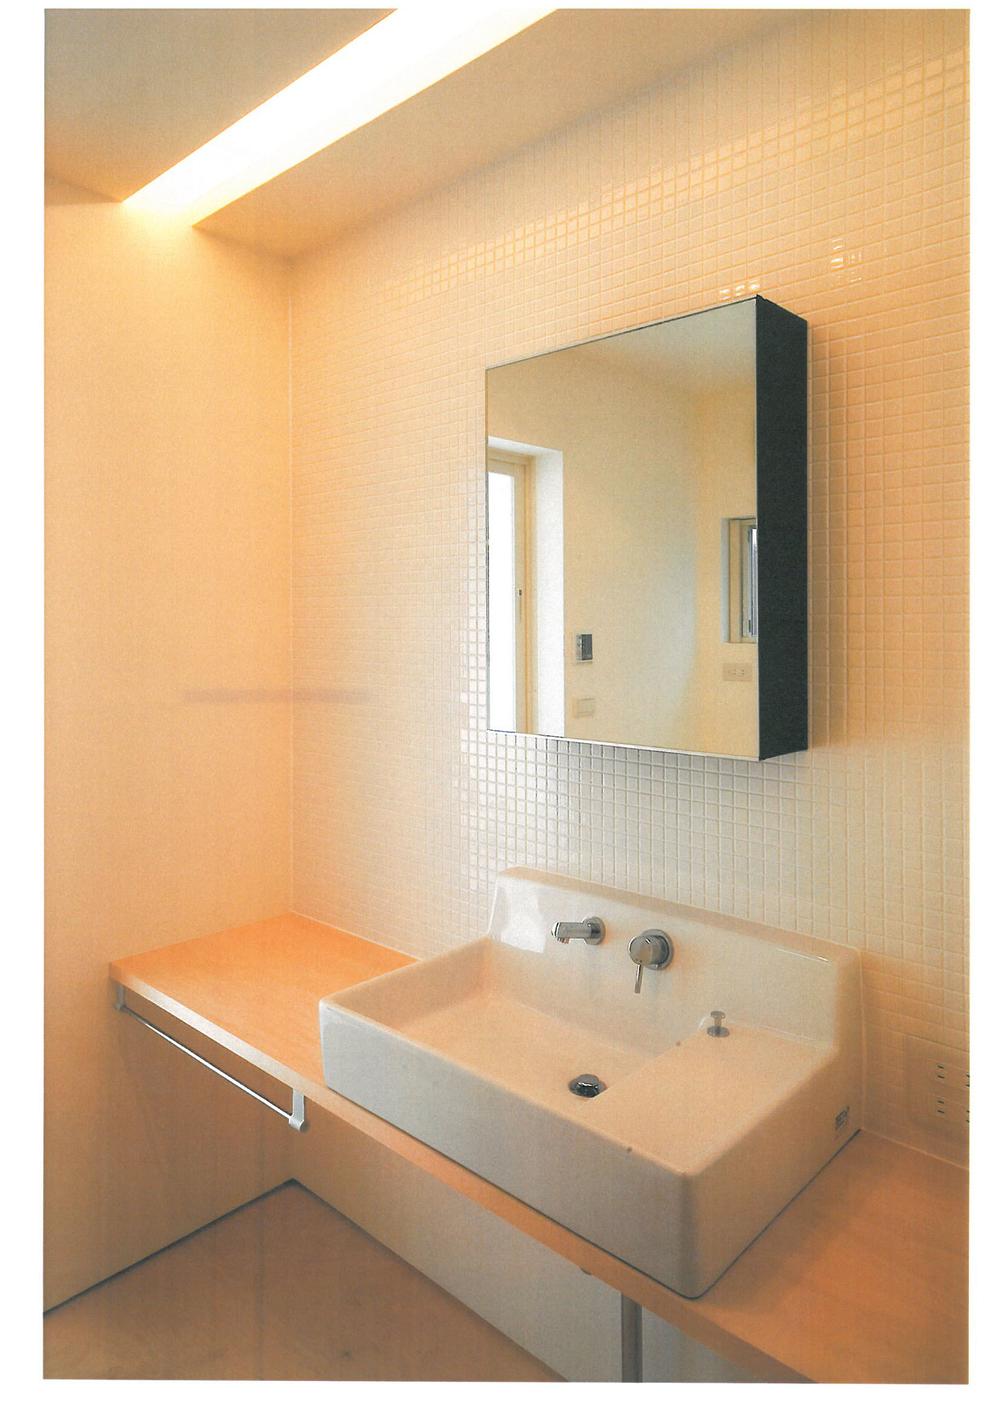 Wash basin, toilet. Indoor (02 May 2007) Shooting